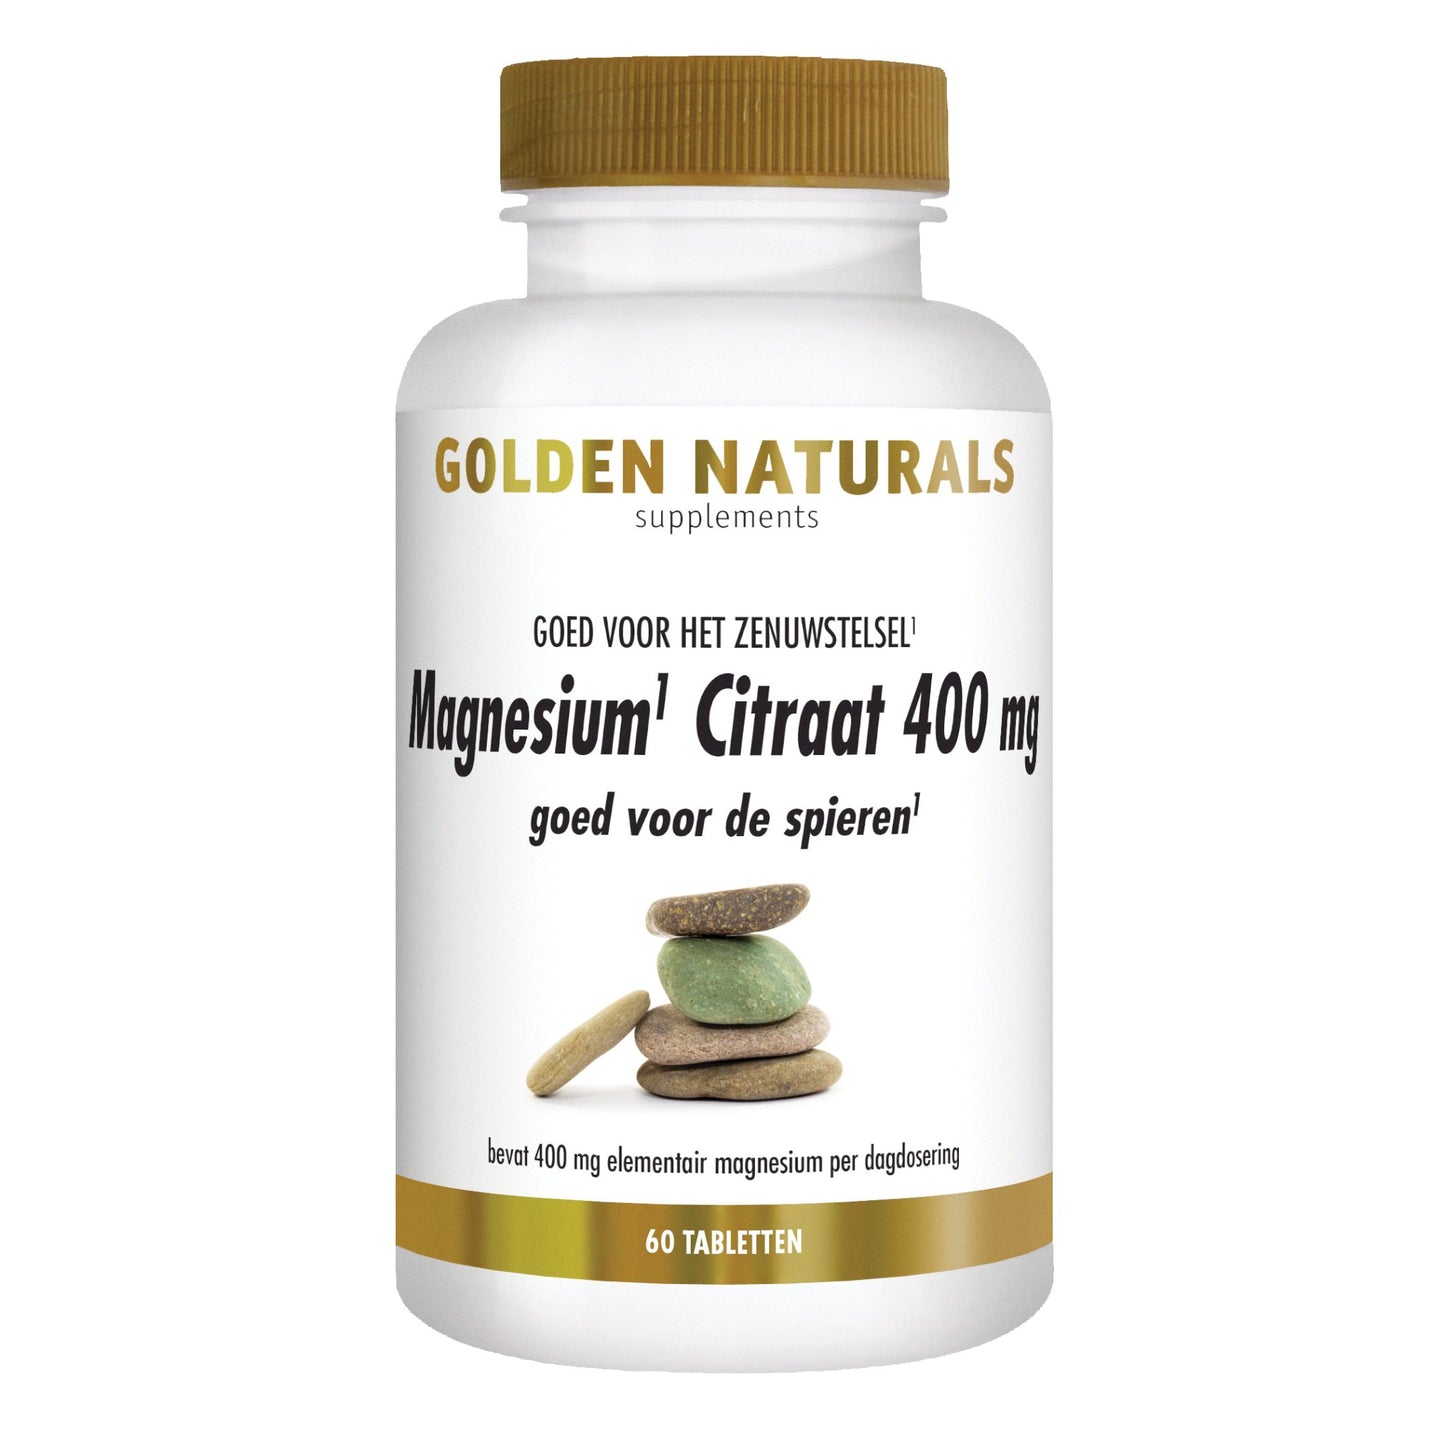 Magnesium Citraat 400 mg - 60 - veganistische tabletten Supplement Golden Naturals   